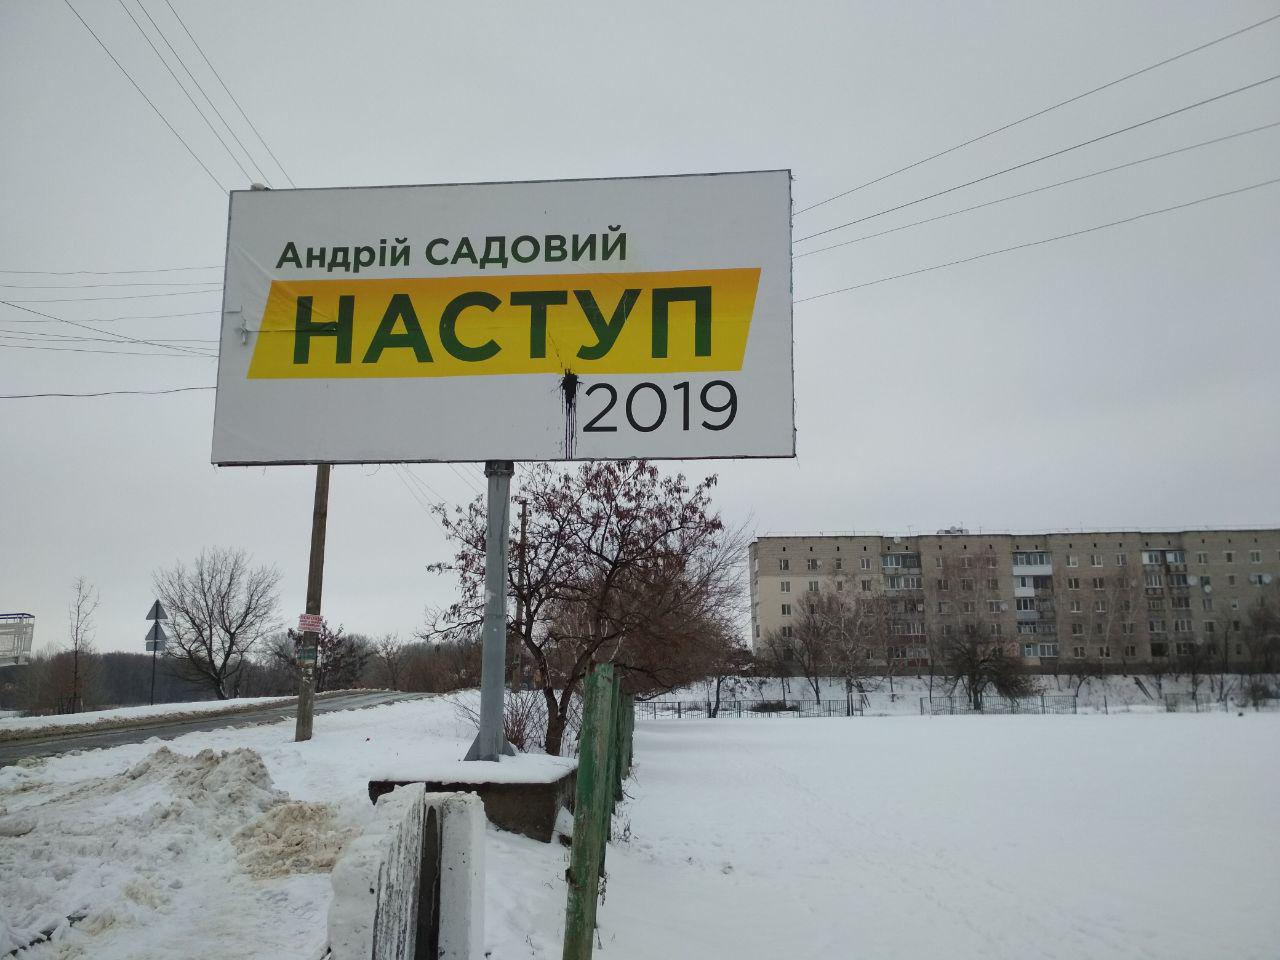 03.01.2019 Kharkiv Sadoviy